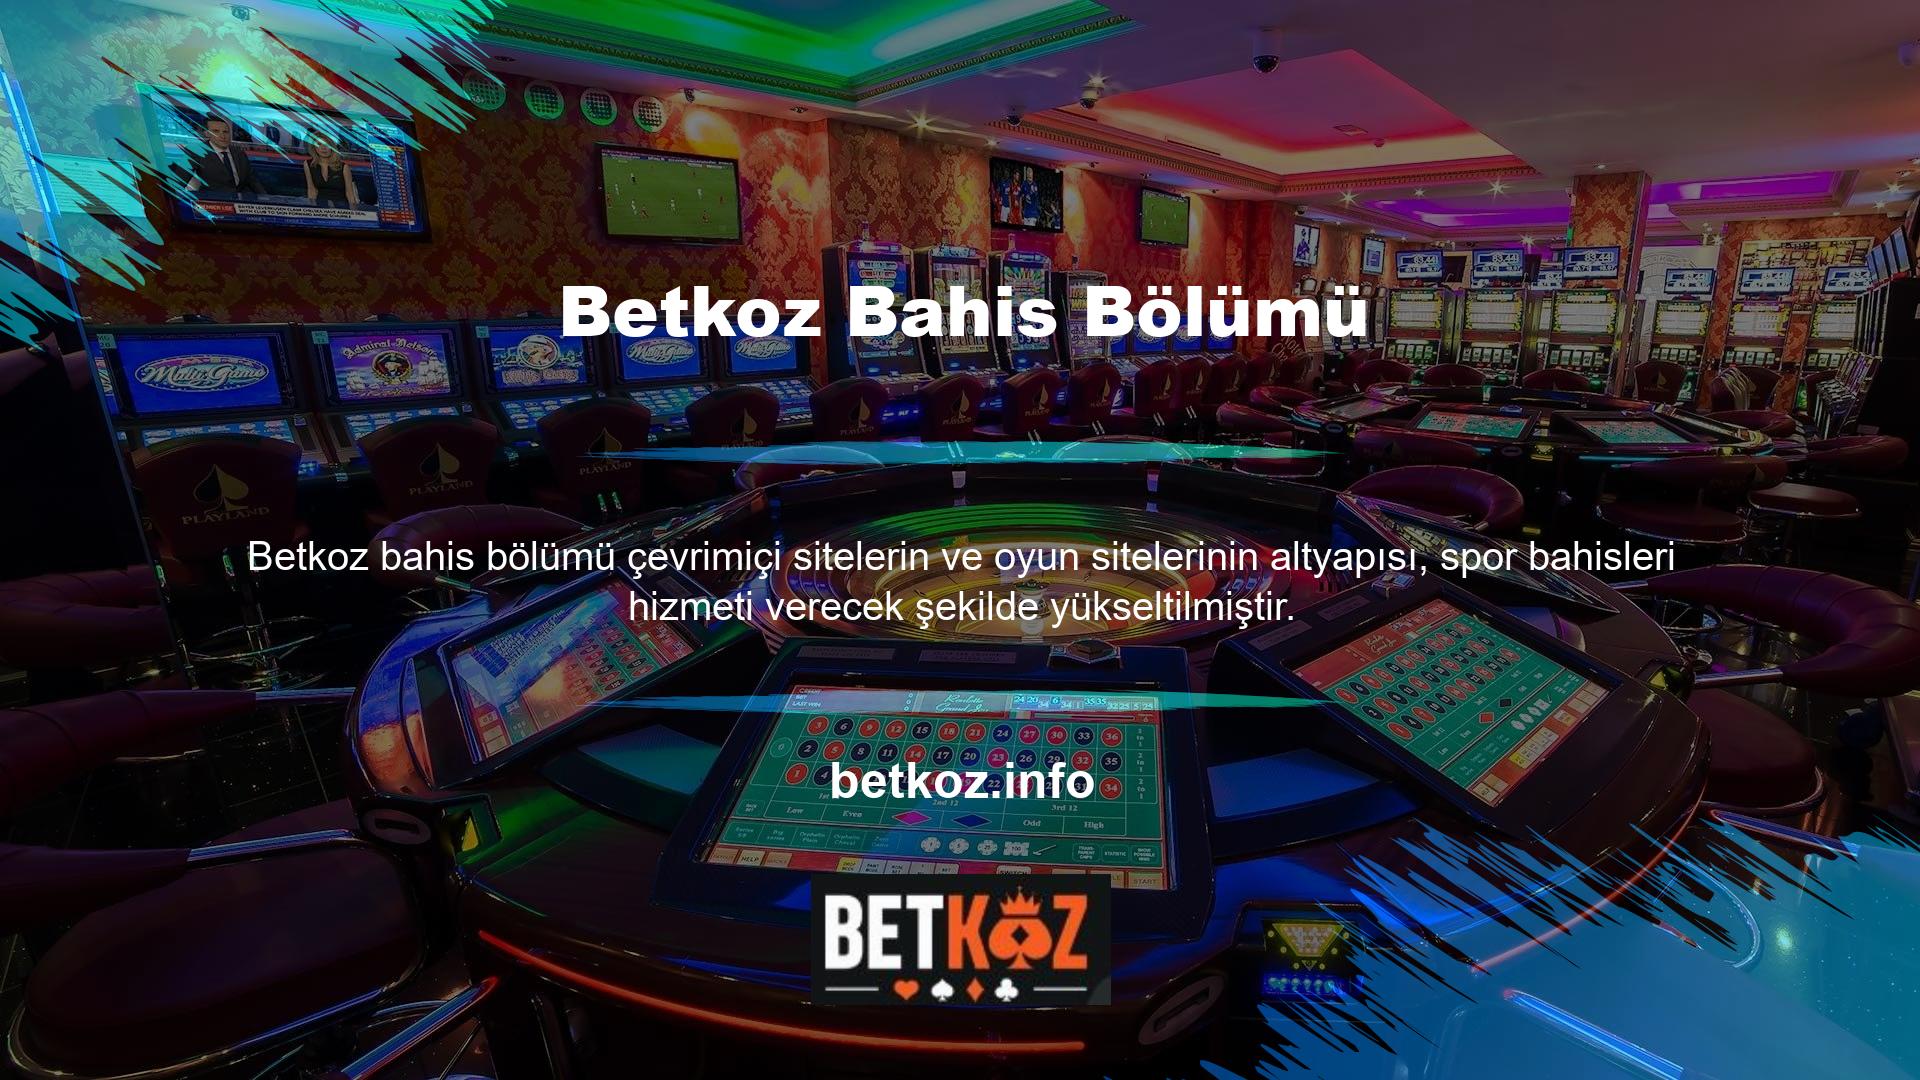 Ülkemizin en iyi bahis siteleri arasında yer alan Betkoz bahis bölümü kart oyunu casino sitesi her türlü bahis türünü kapsamaktadır